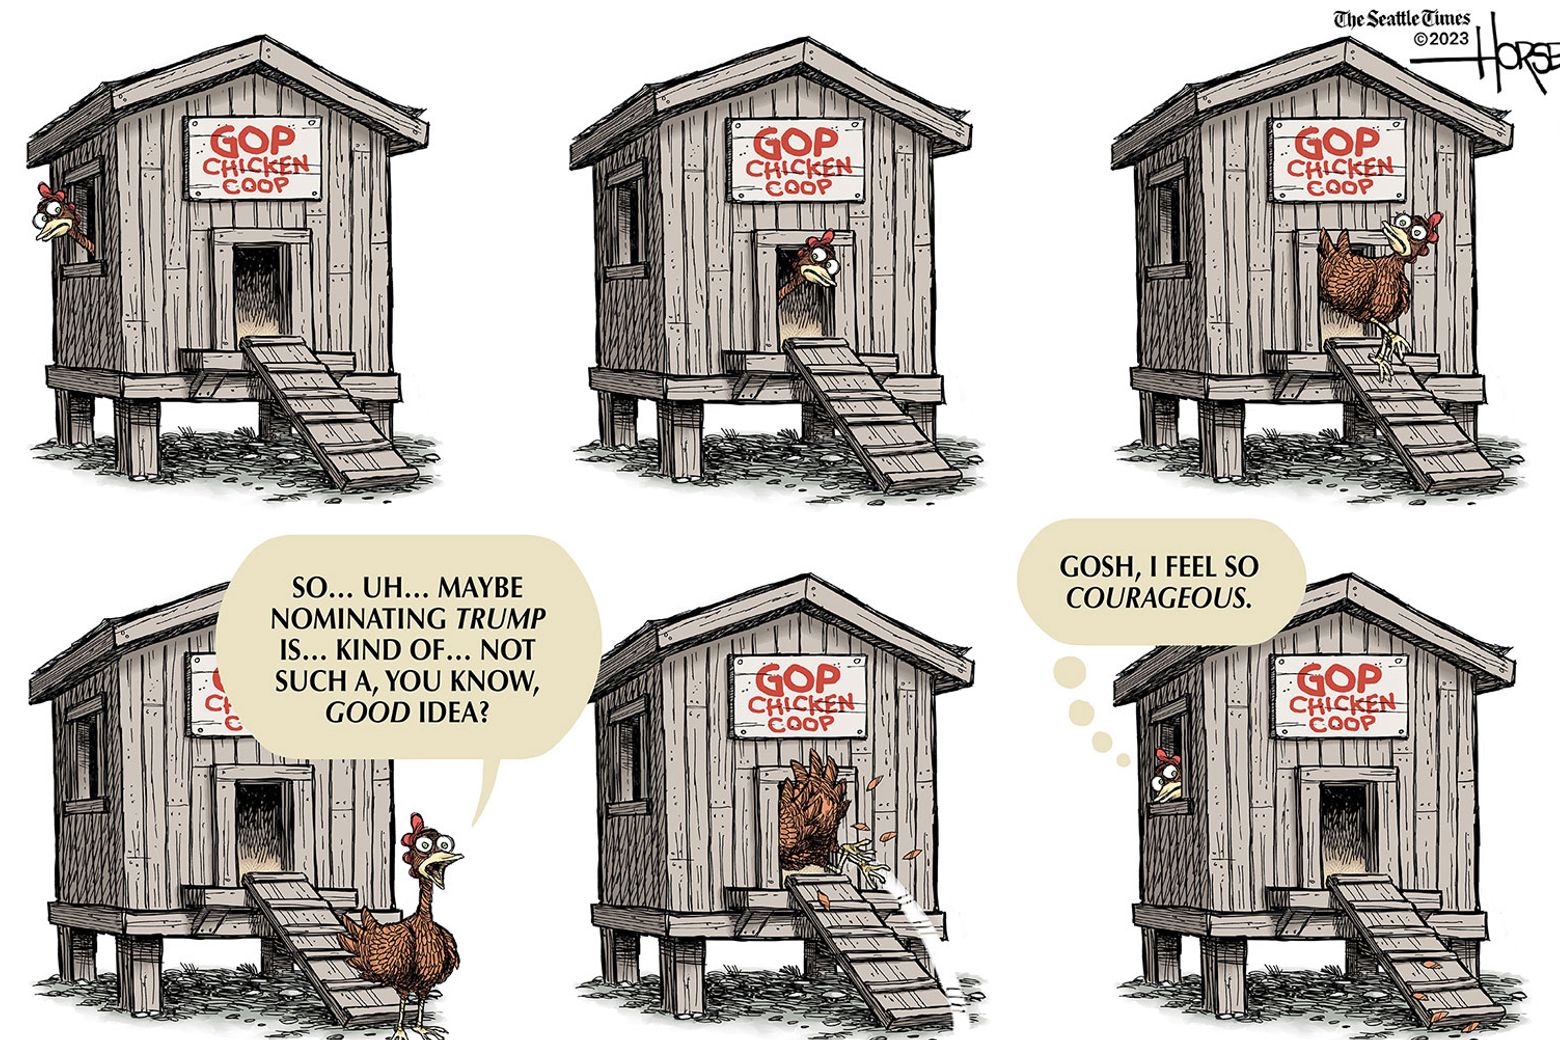 chicken coop cartoon